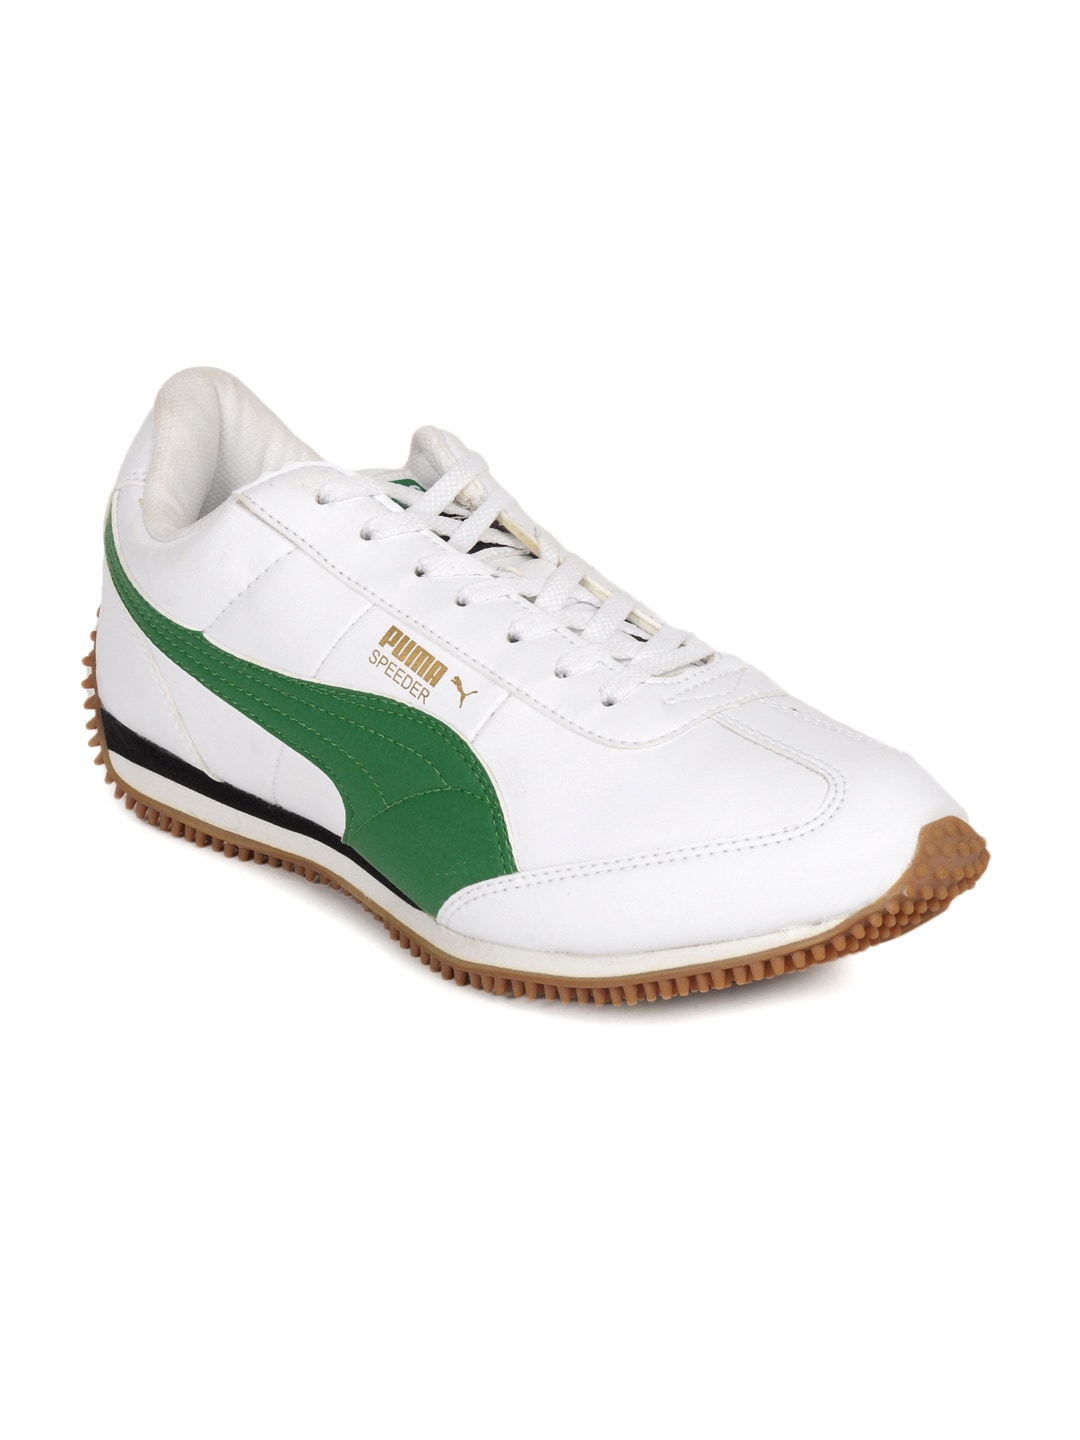 Puma Unisex White Speeder Sports Shoes